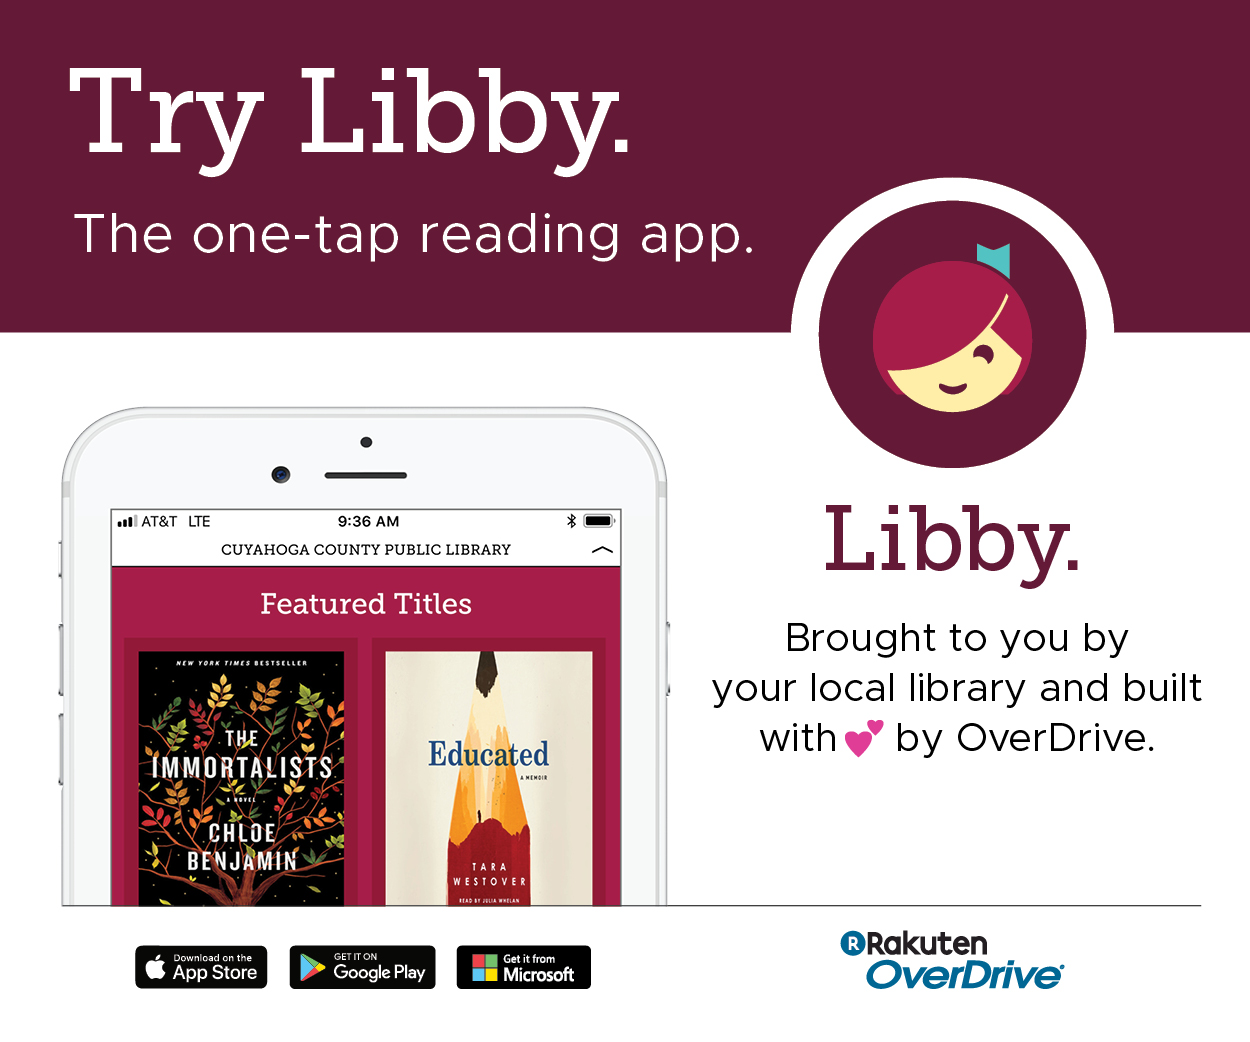 libby the ebook app